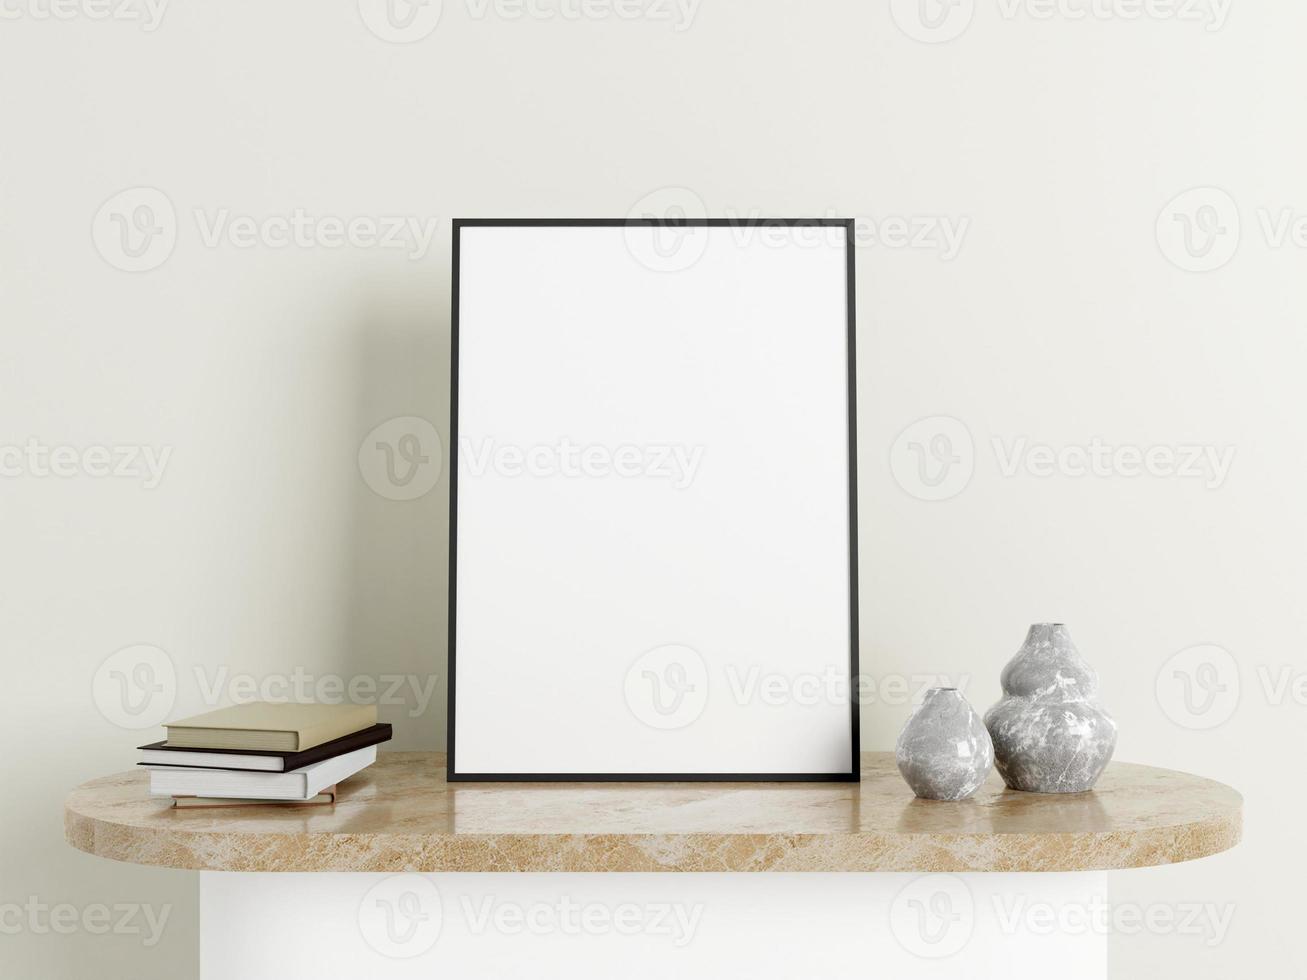 cartaz preto vertical minimalista ou maquete de moldura na mesa de mármore com decoração foto